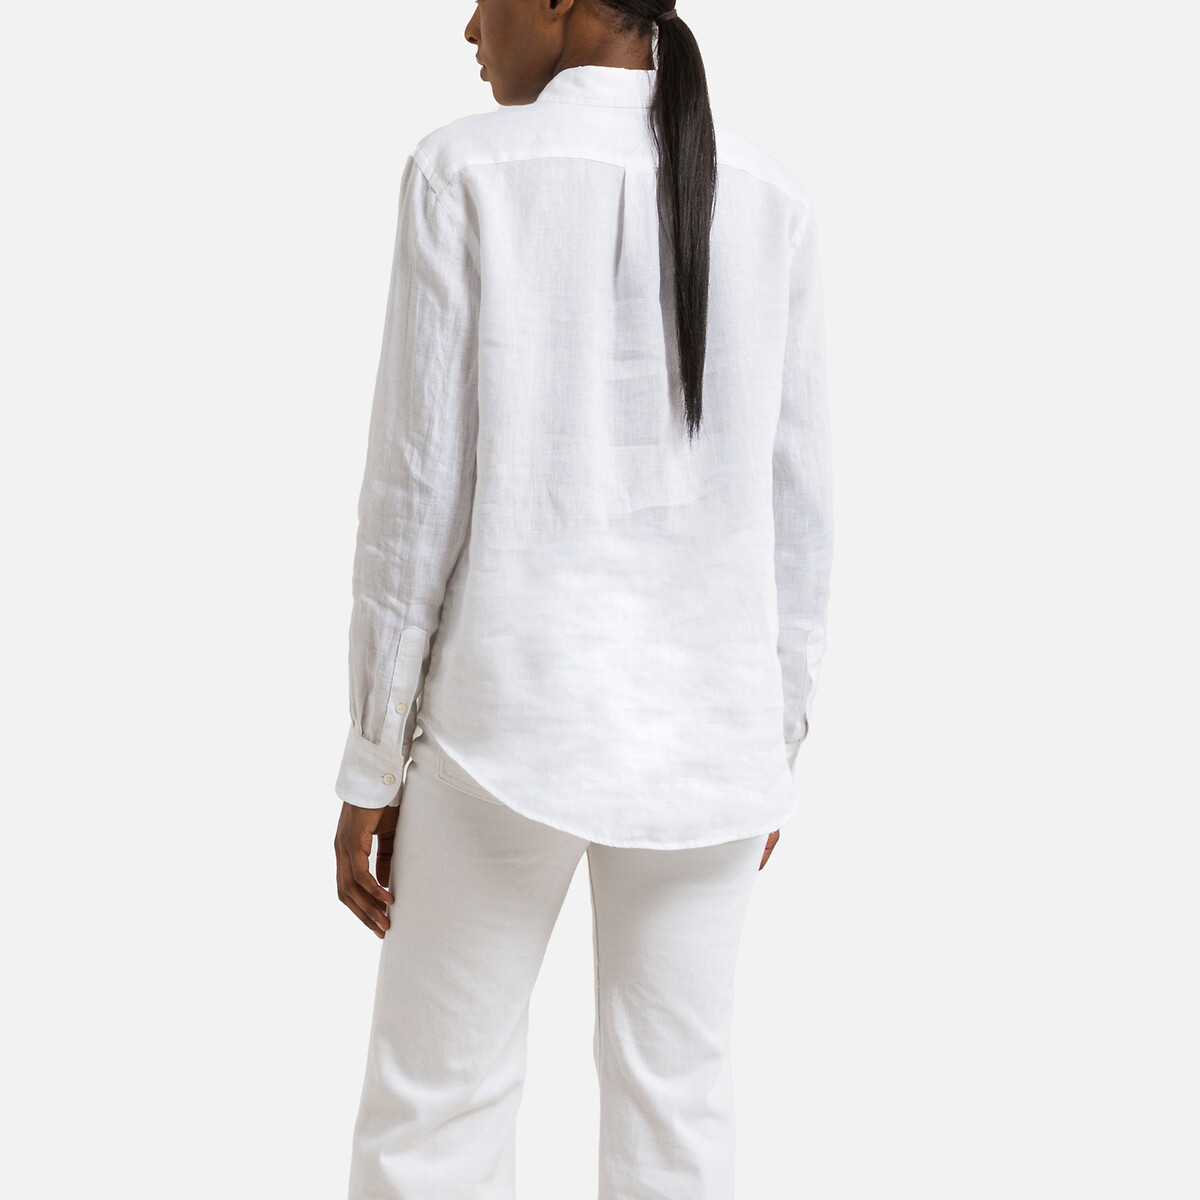 Рубашка Льняная с длинными рукавами S белый LaRedoute, размер S - фото 4